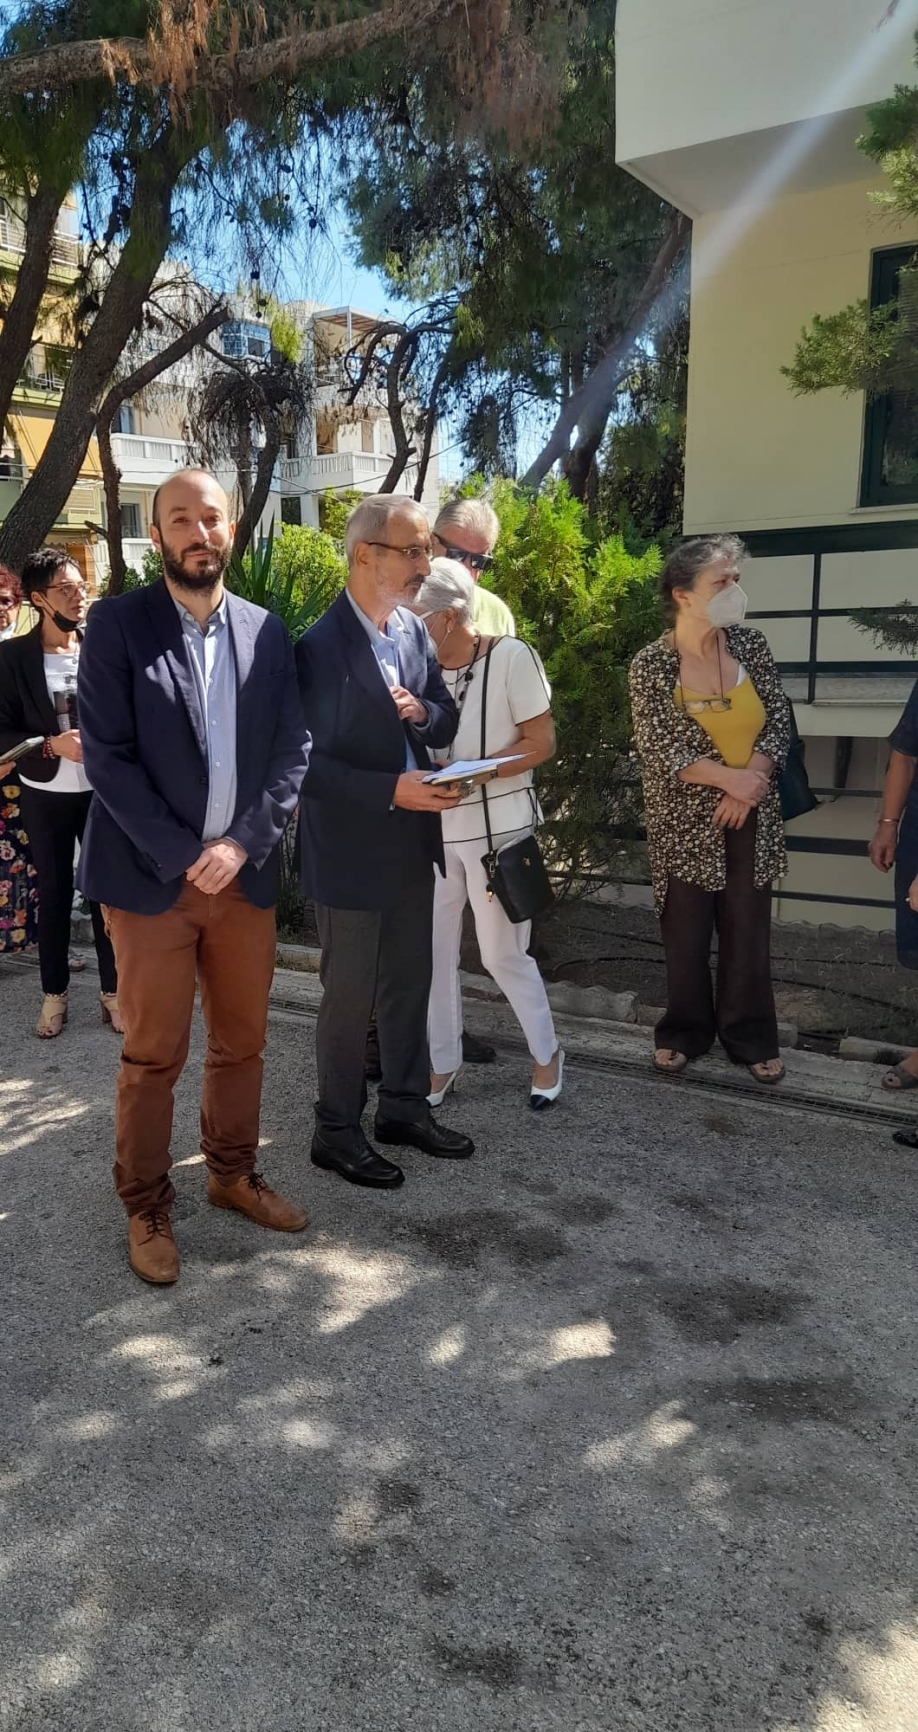 Δήμος Μπροστά+: Χρέος μας να διατηρούμε ζωντανή την μνήμη του Μικρασιατικού Ελληνισμού